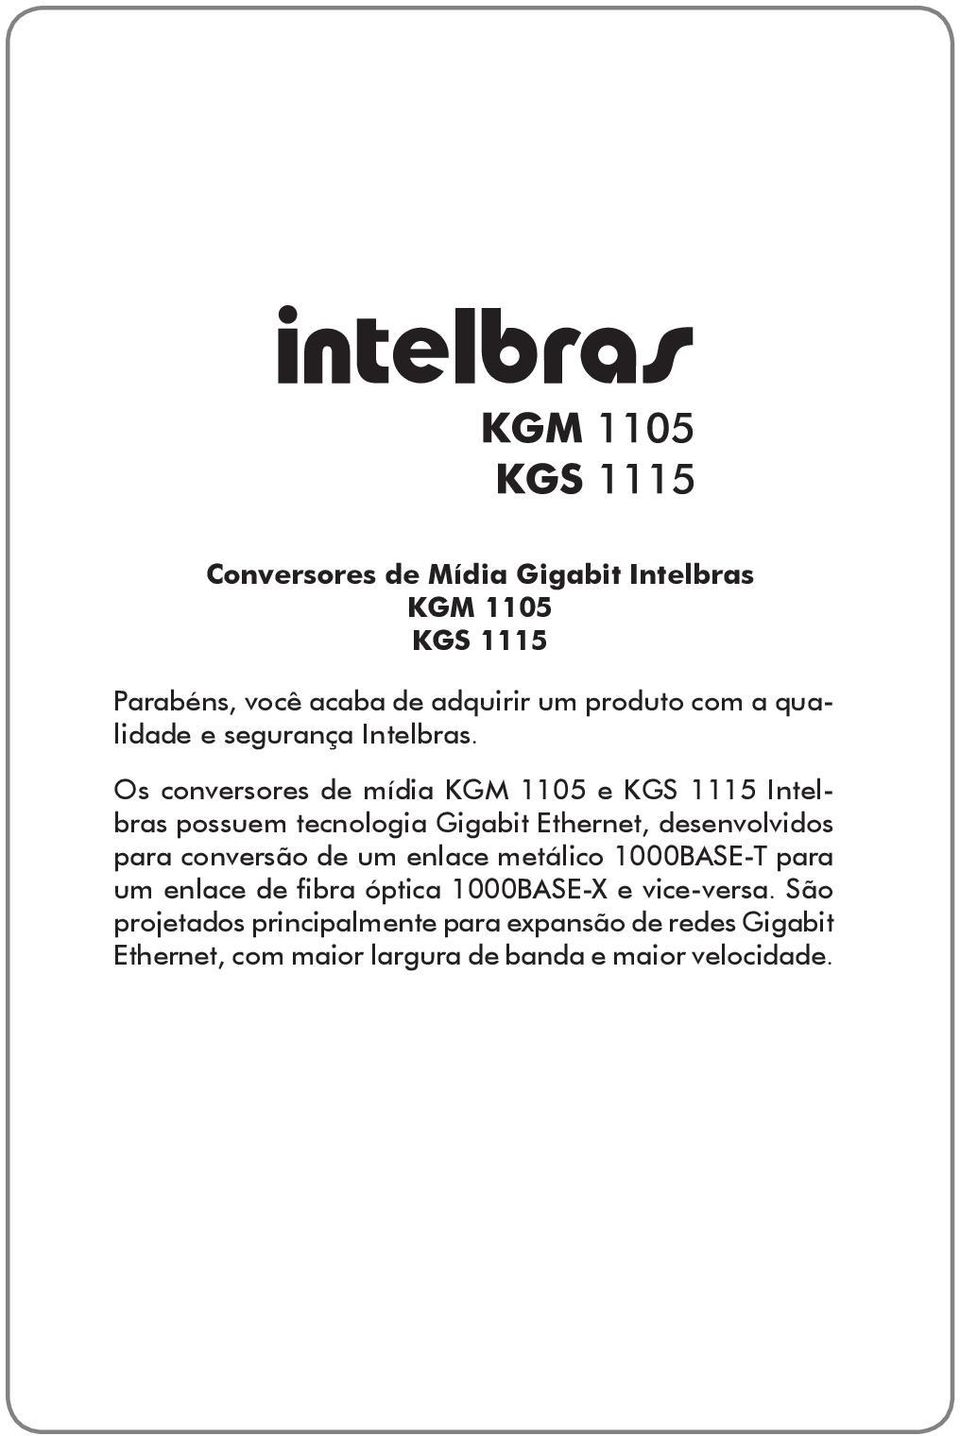 Os conversores de mídia KGM 1105 e KGS 1115 Intelbras possuem tecnologia Gigabit Ethernet, desenvolvidos para